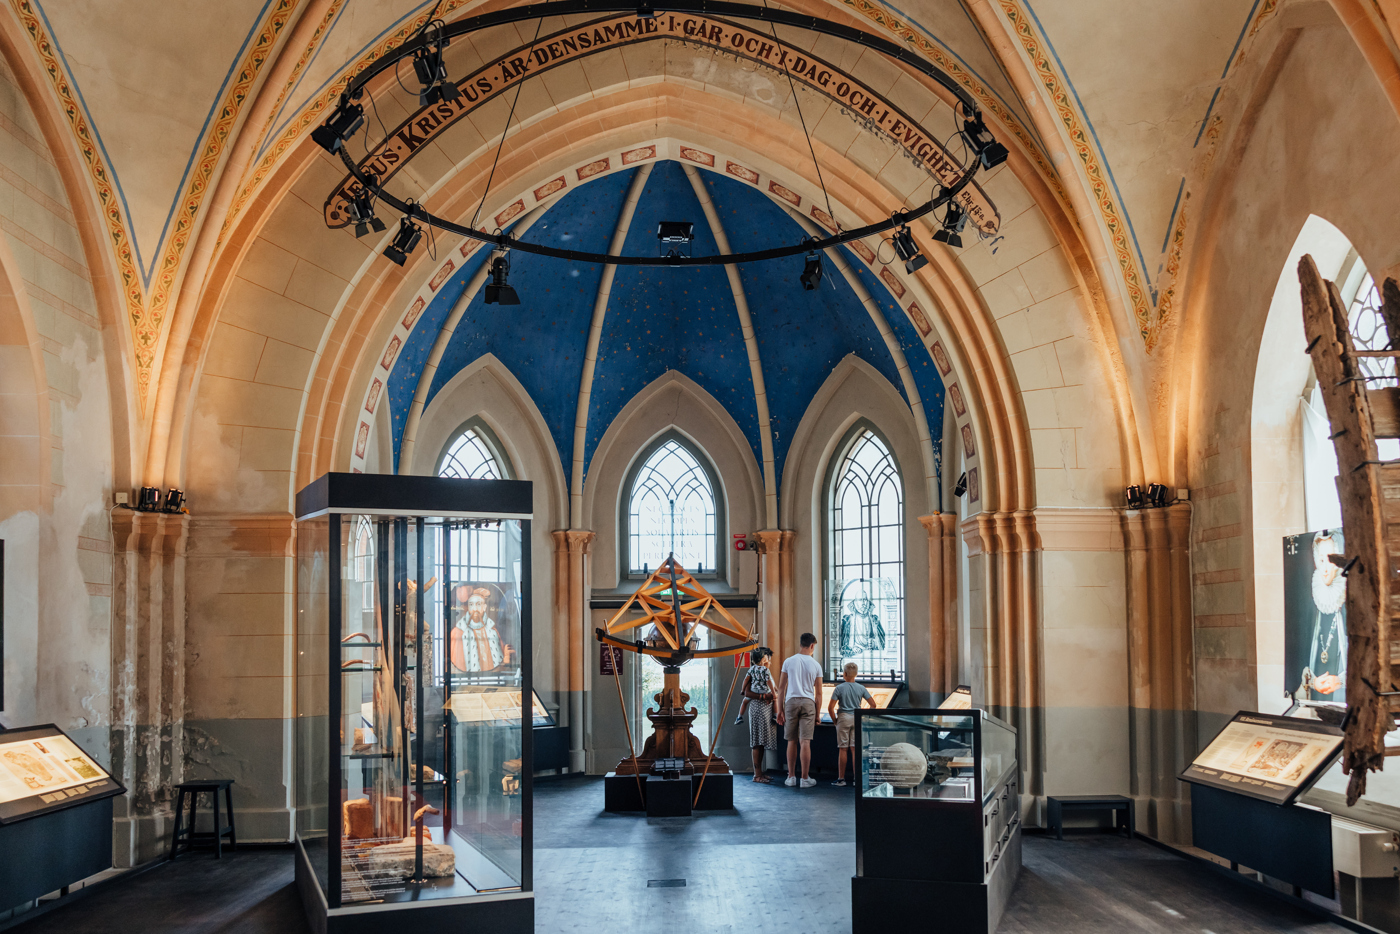 Tycho Brahe museet interiört med utställningarna